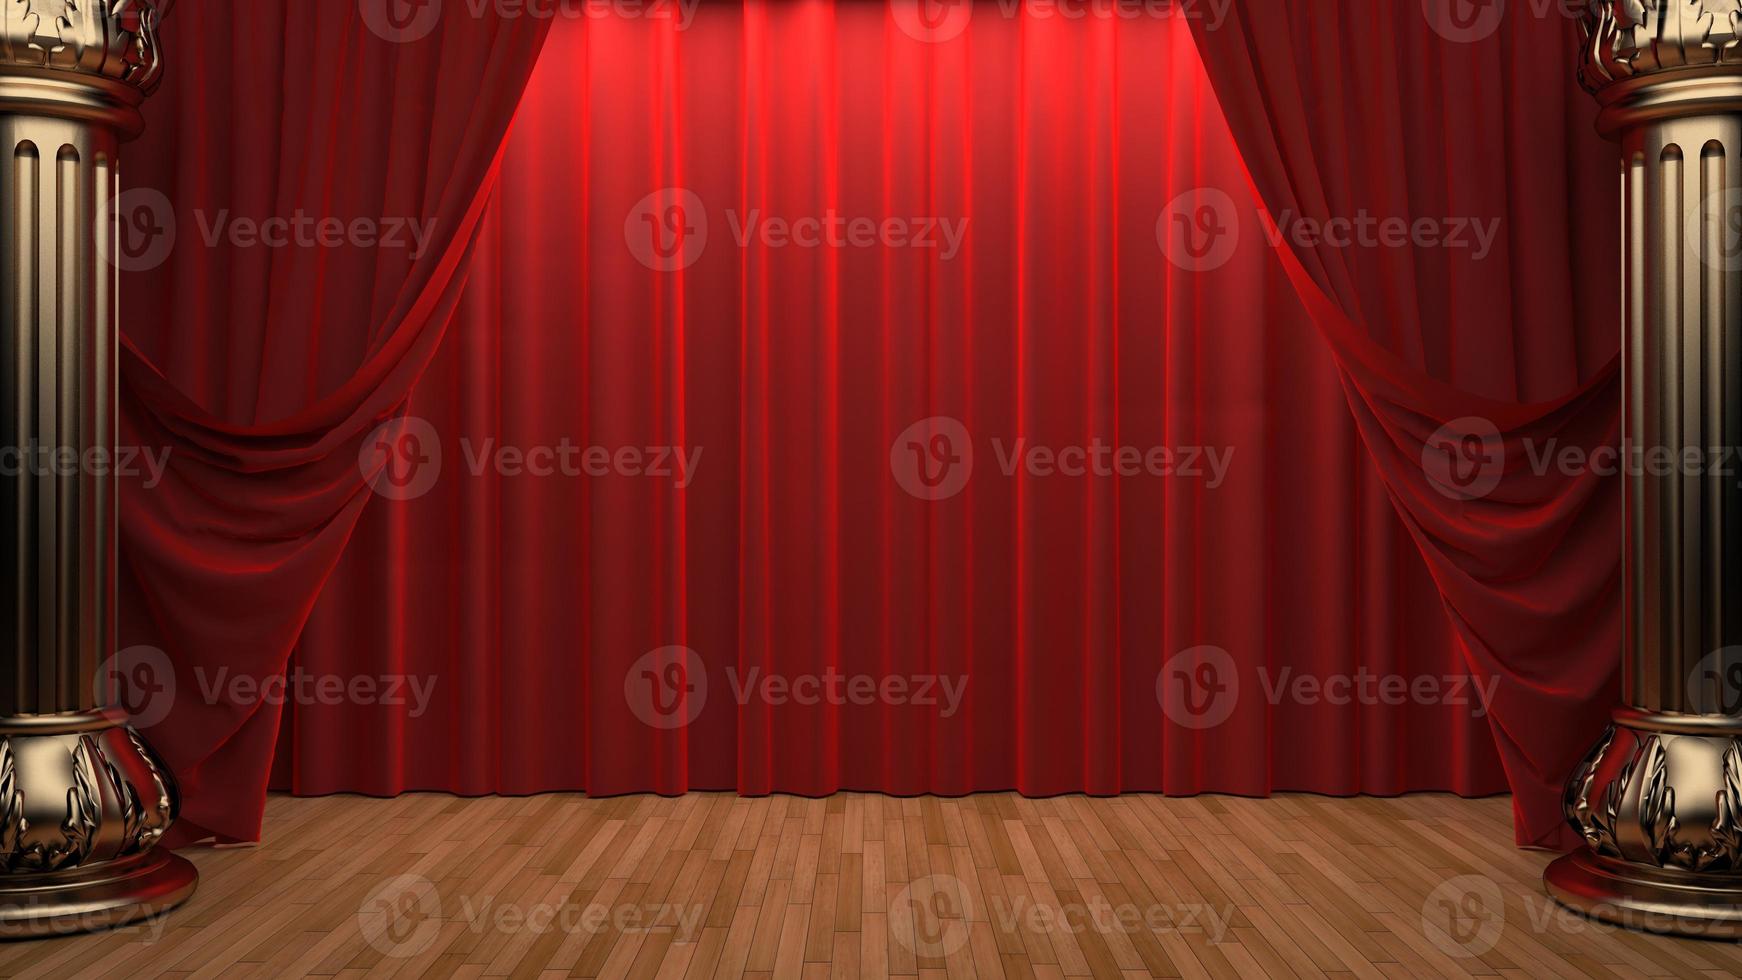 red velvet curtain opening the scene photo